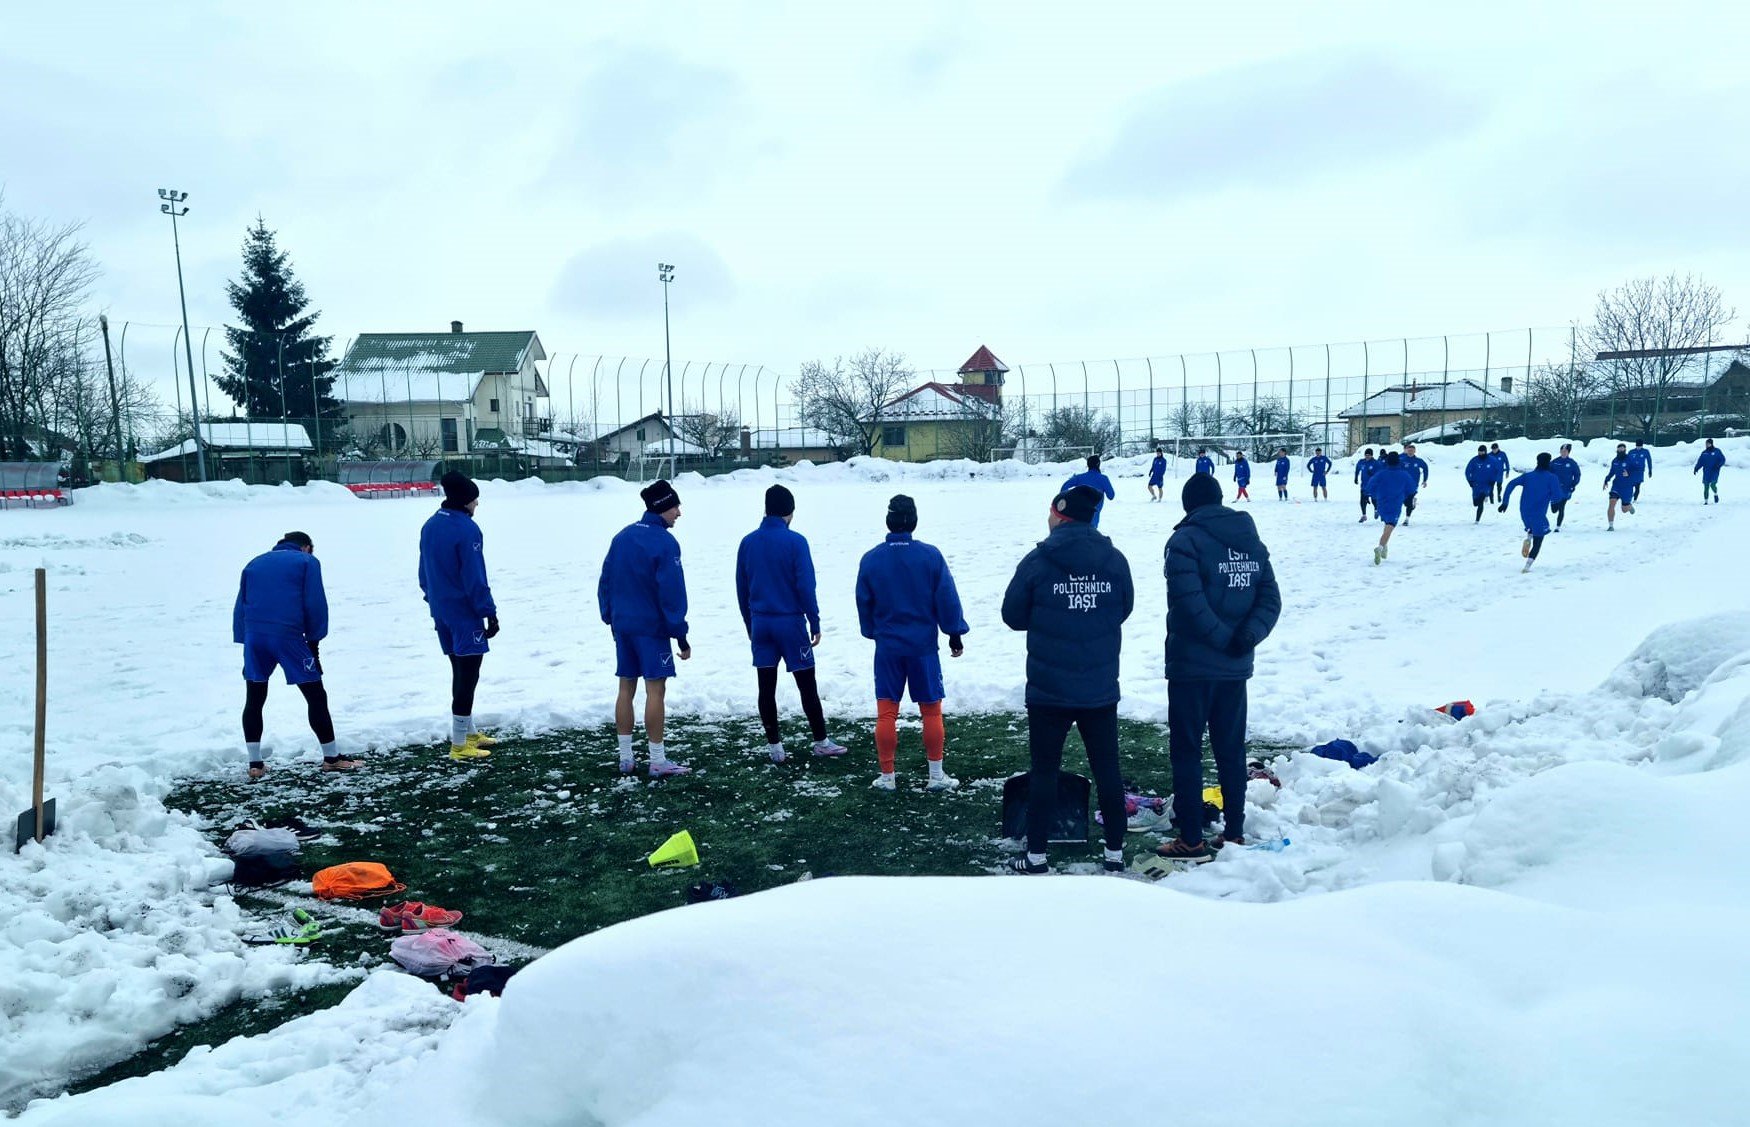  FOTBAL – Politehnica, alungată din Copou. Deplasare cu trei zile înainte de meciul din Ghencea: terenurile din Iaşi, pline de zăpadă